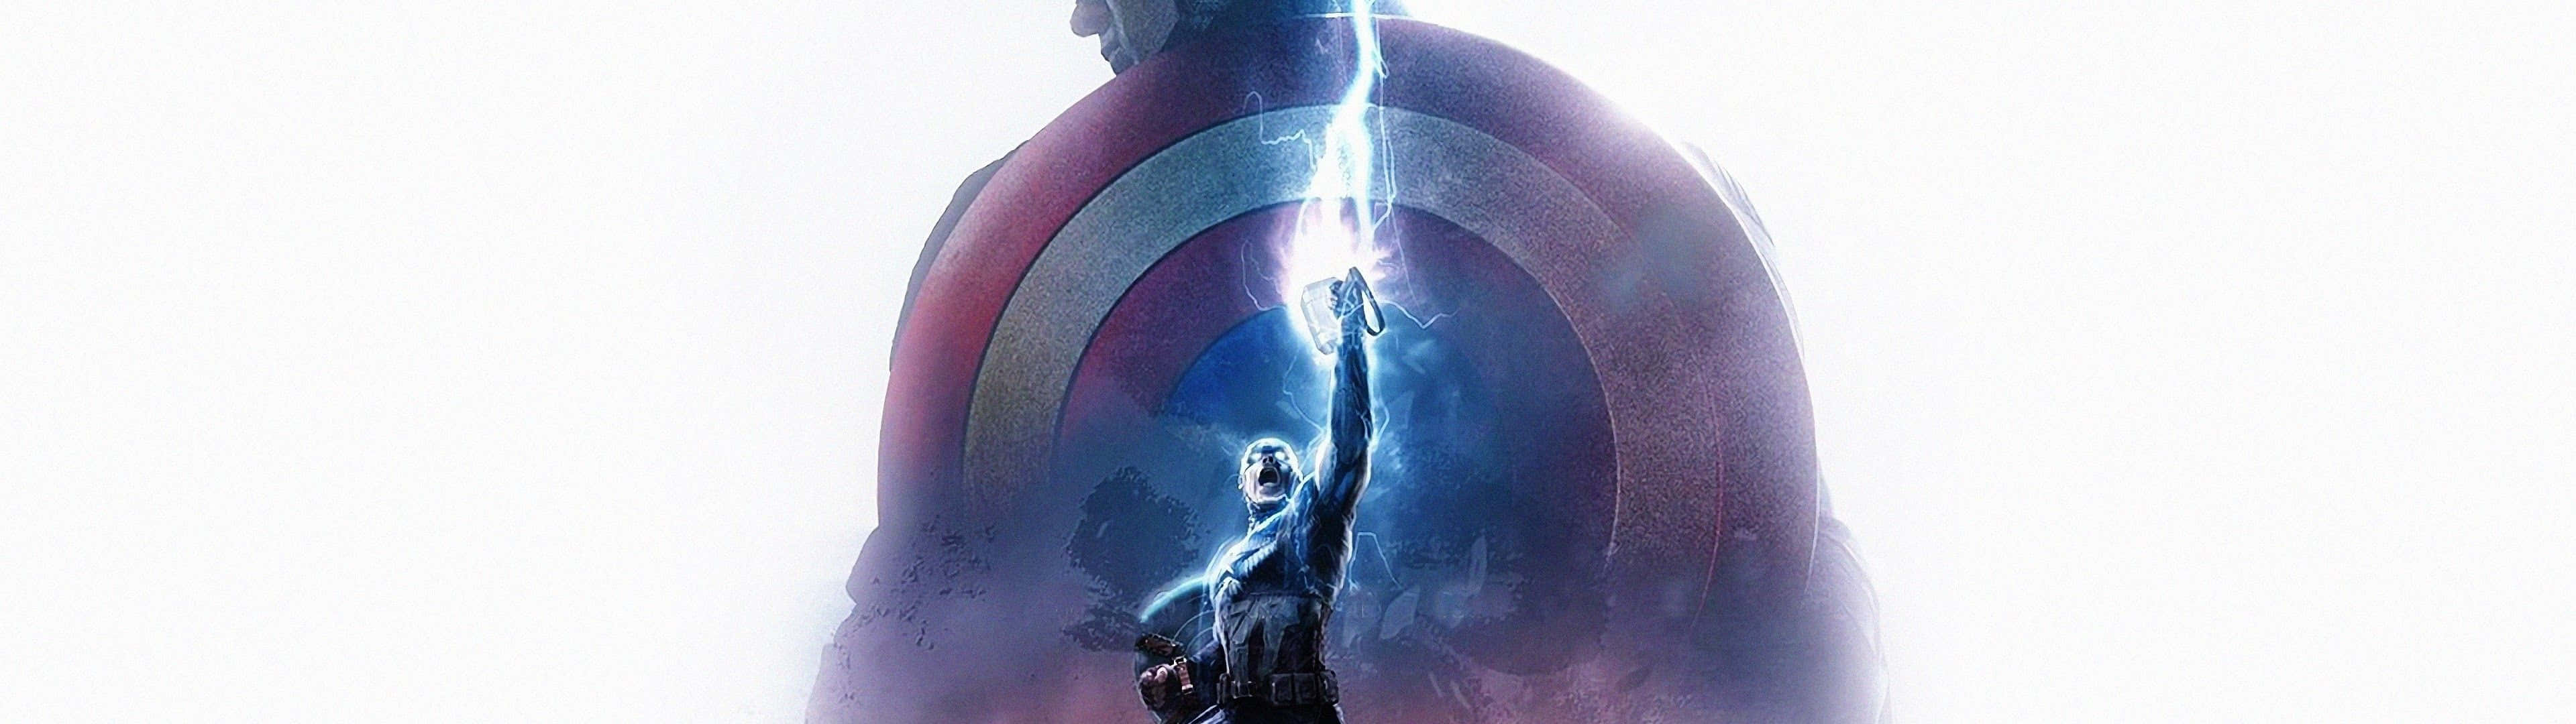 Vær patriotisk og inspireret den 4. juli med Captain America Dual Screen Wallpaper! Wallpaper